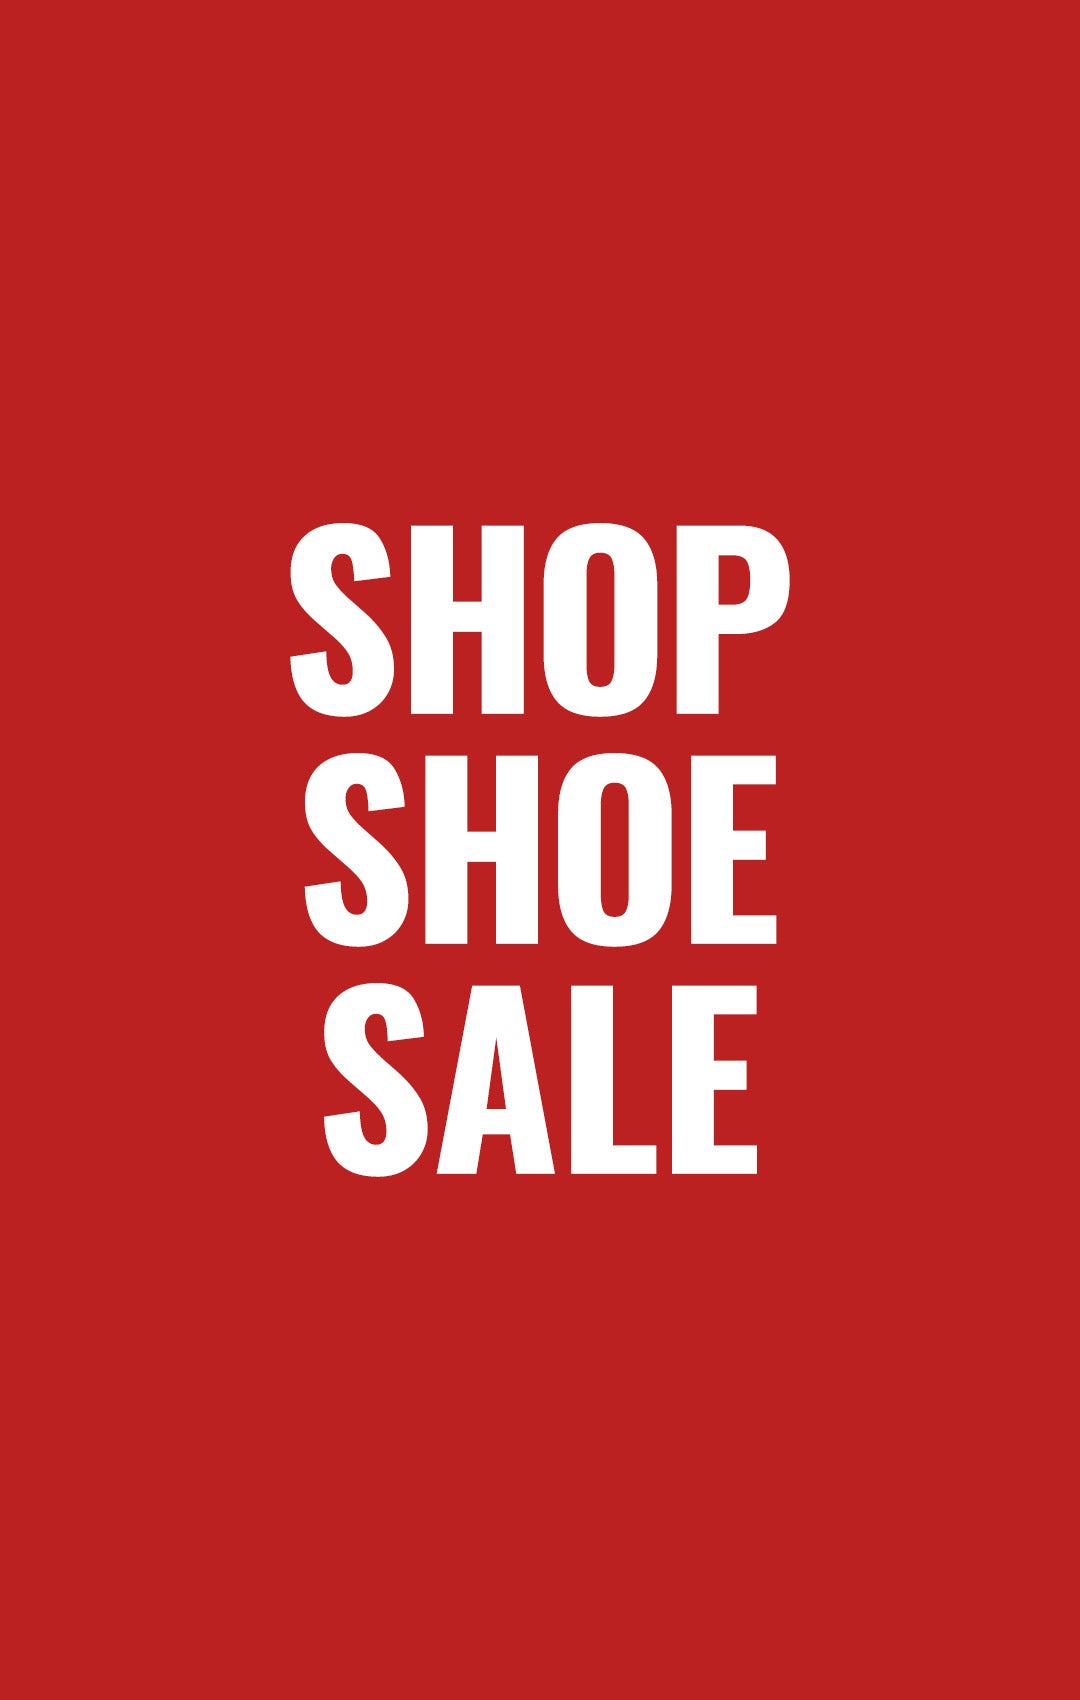 Sale Shoes, Apparel, & Accessories